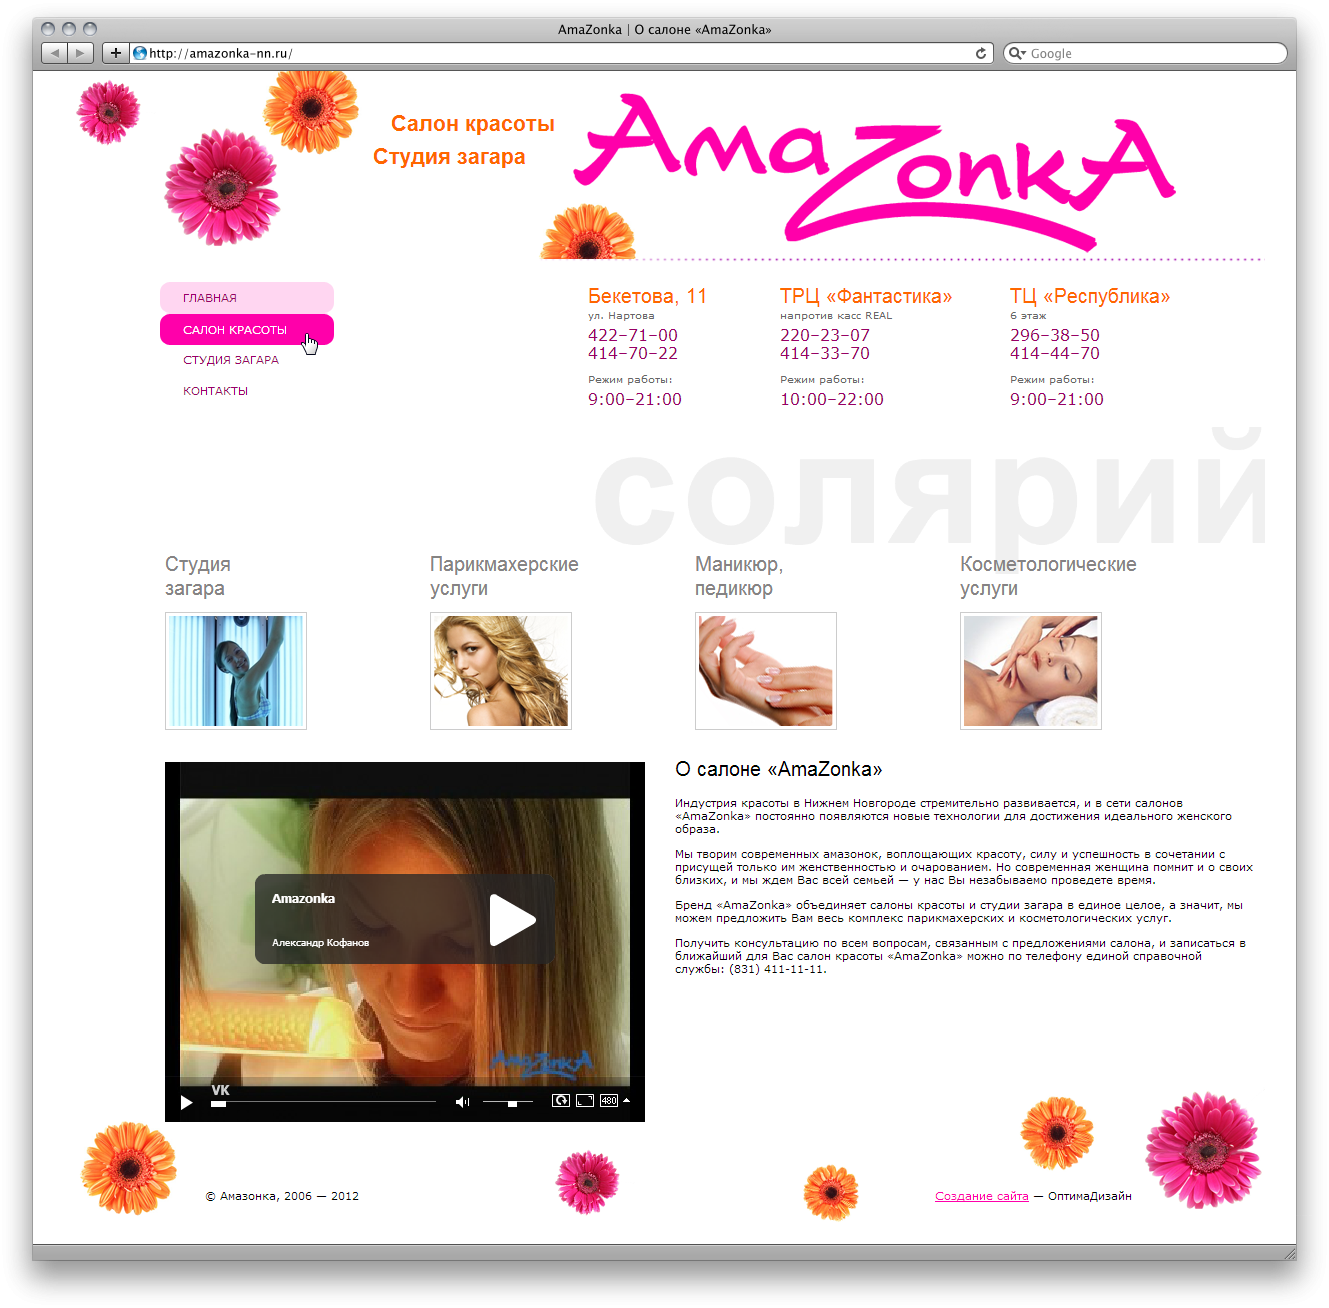 Сайт сети салонов красоты «AmaZonka» 1.0